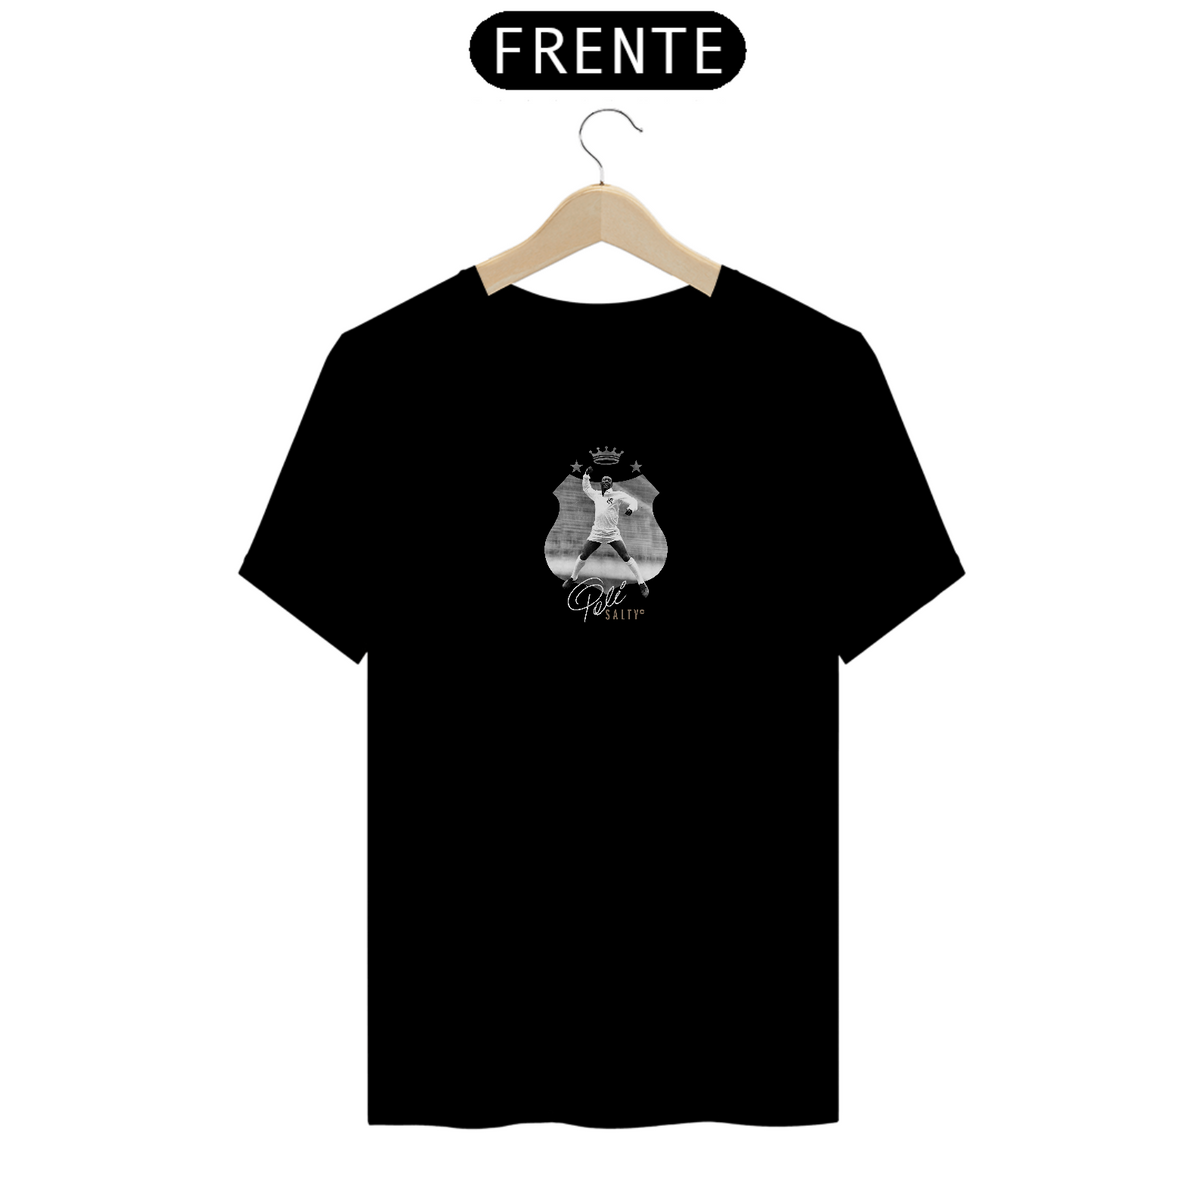 Nome do produto: T-Shirt Especial Premium Símbolo Pelé